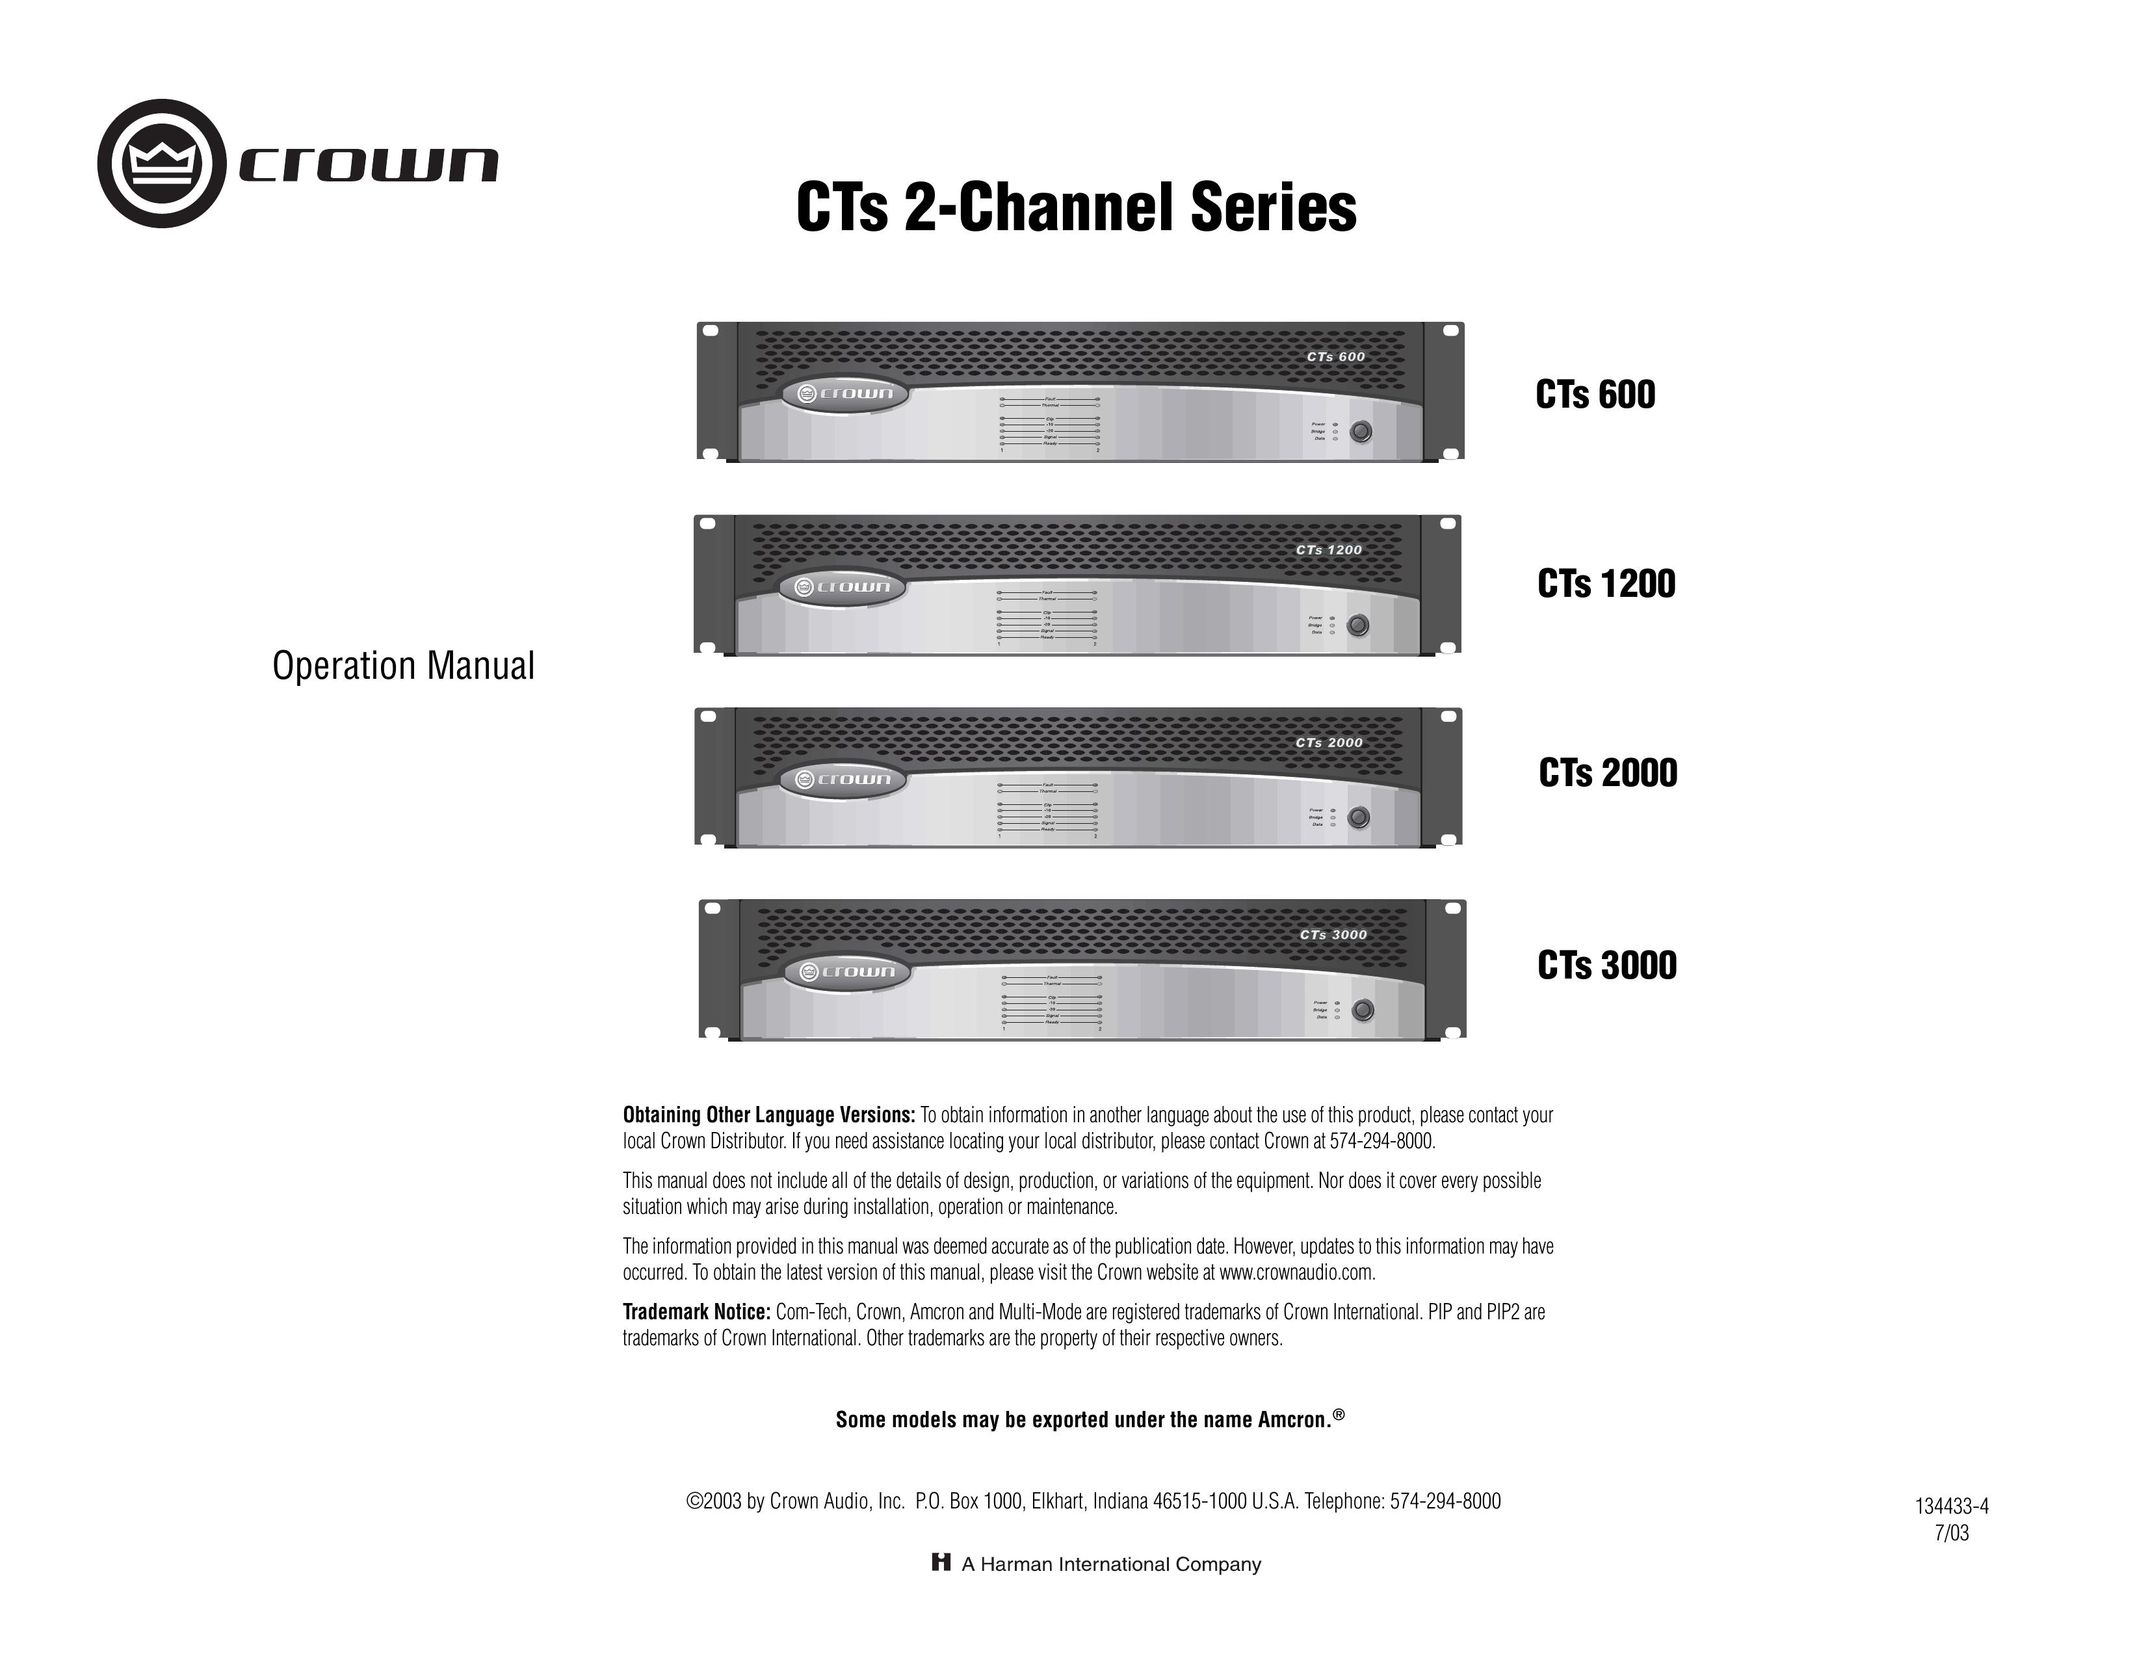 Crown Audio CTs 2000 Speaker User Manual